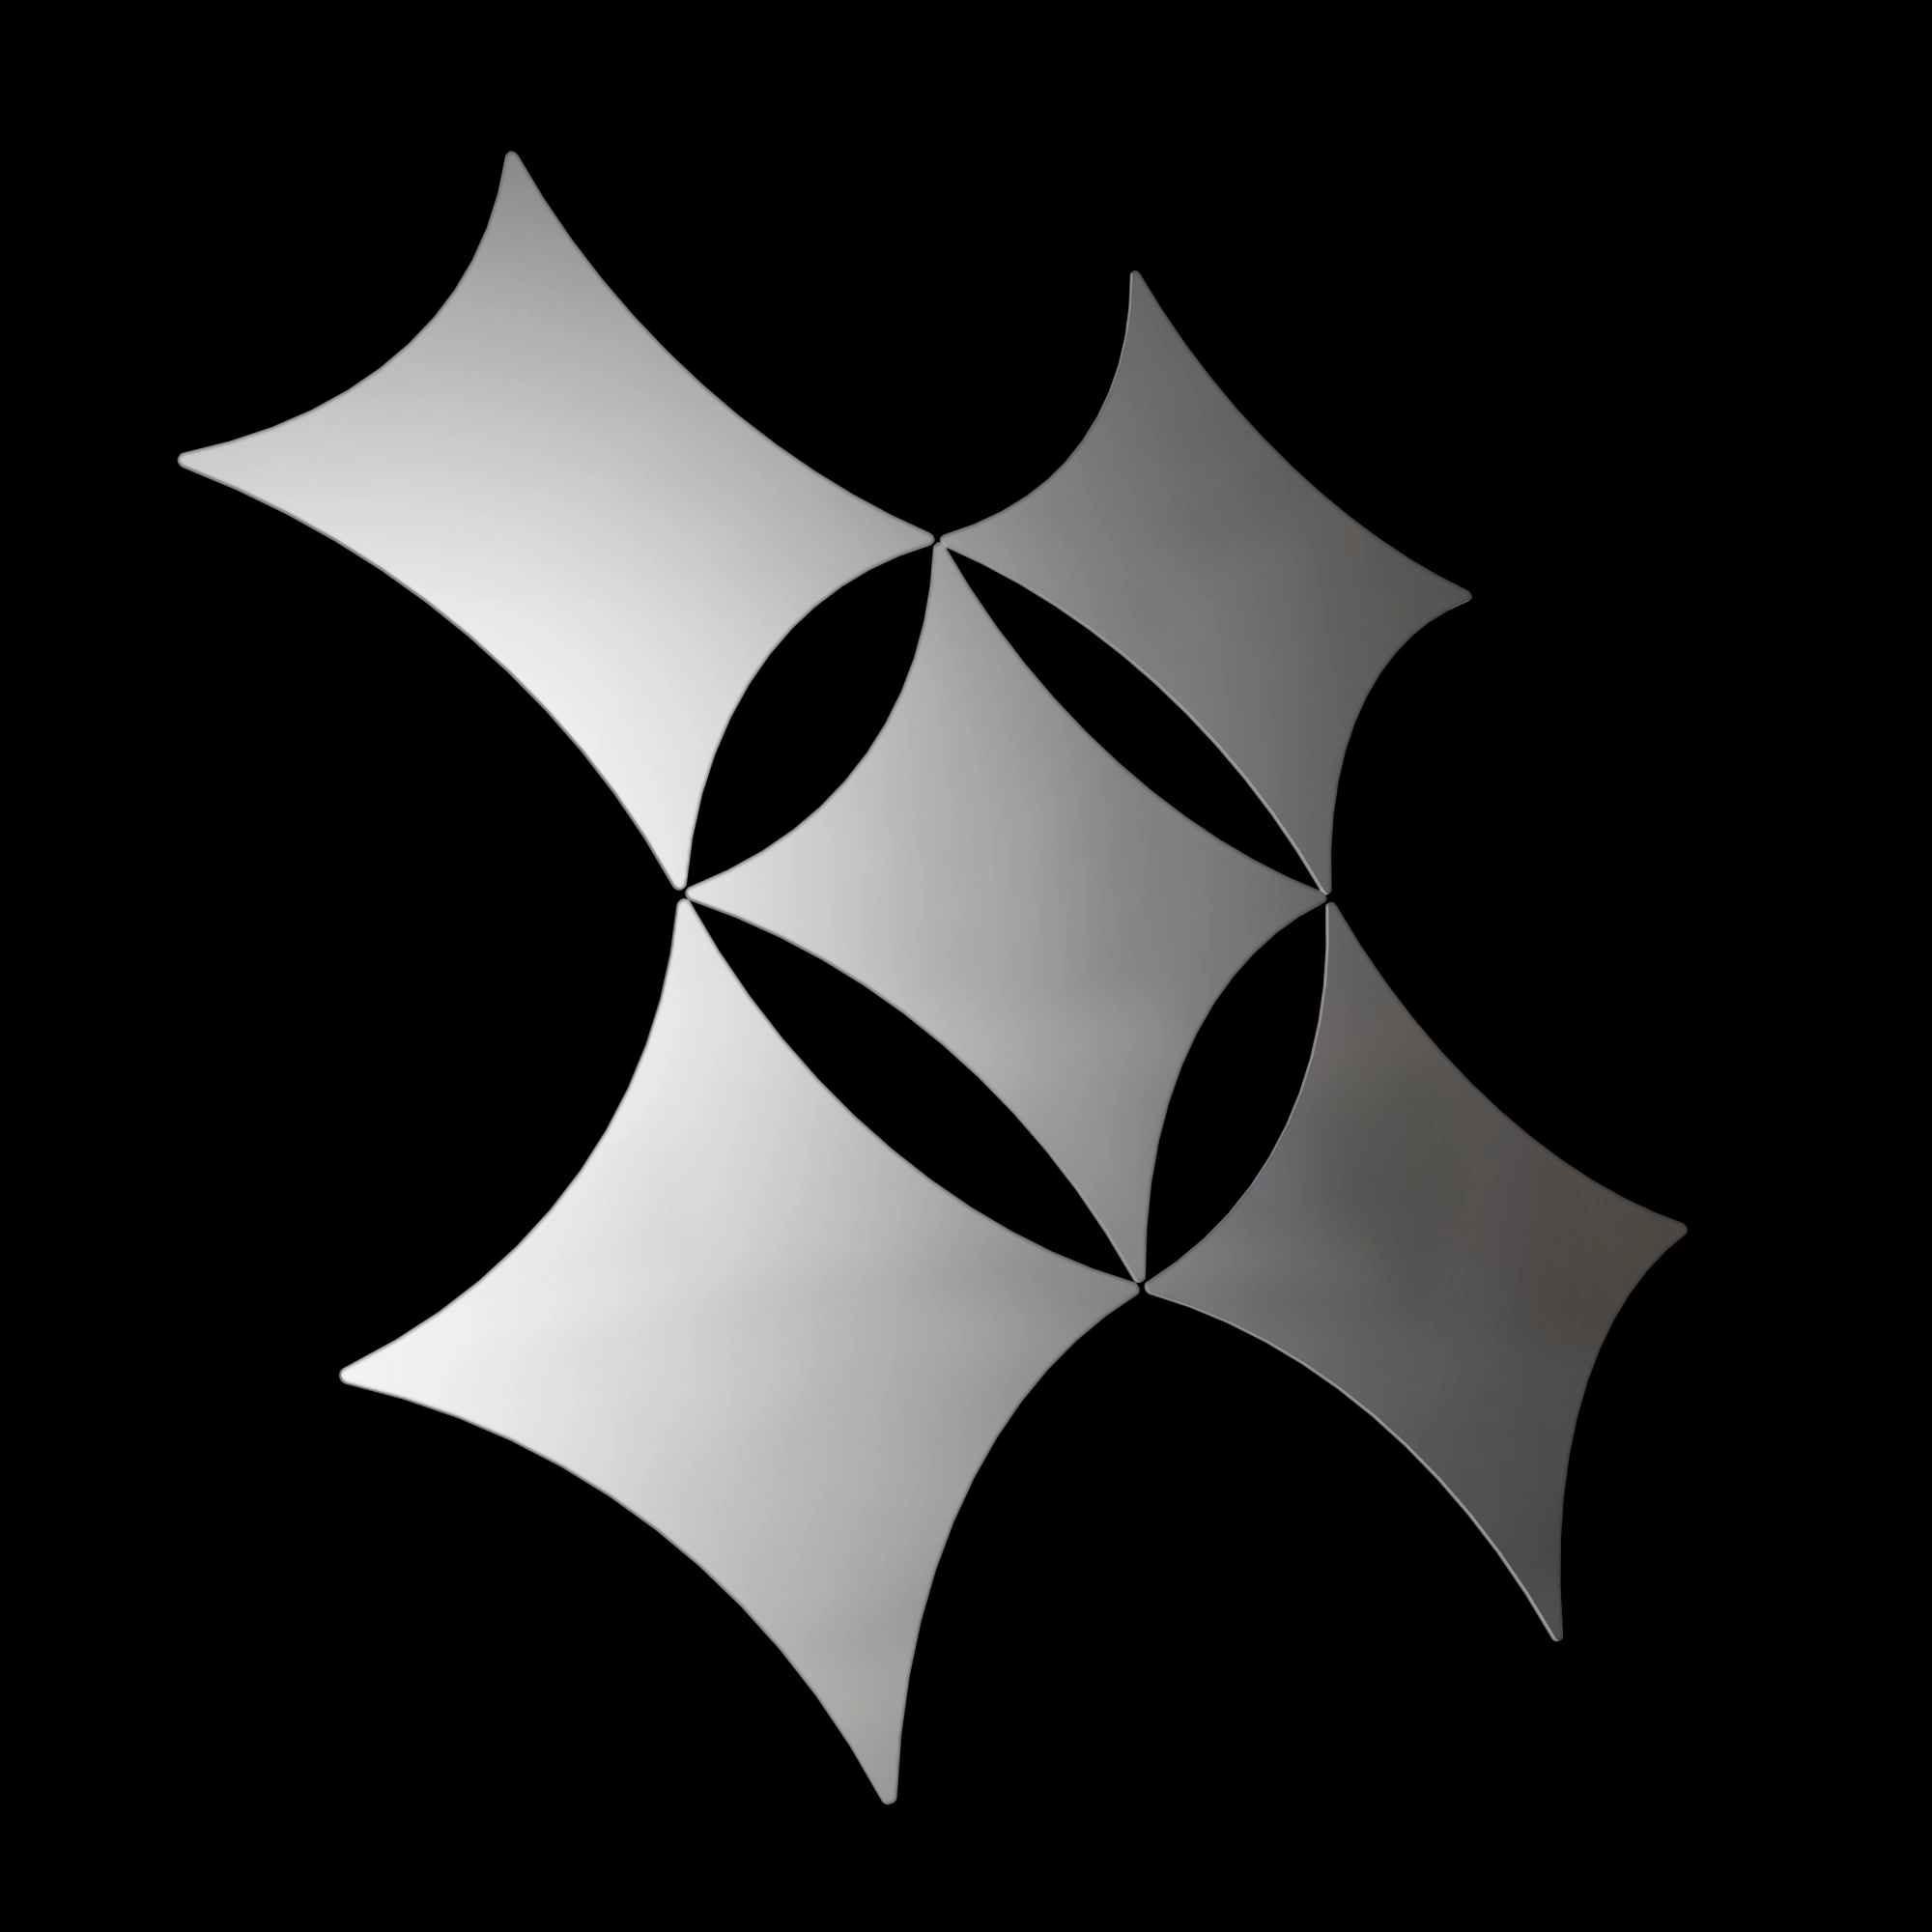 rhombus_1_0_group_silver_800_800.webp